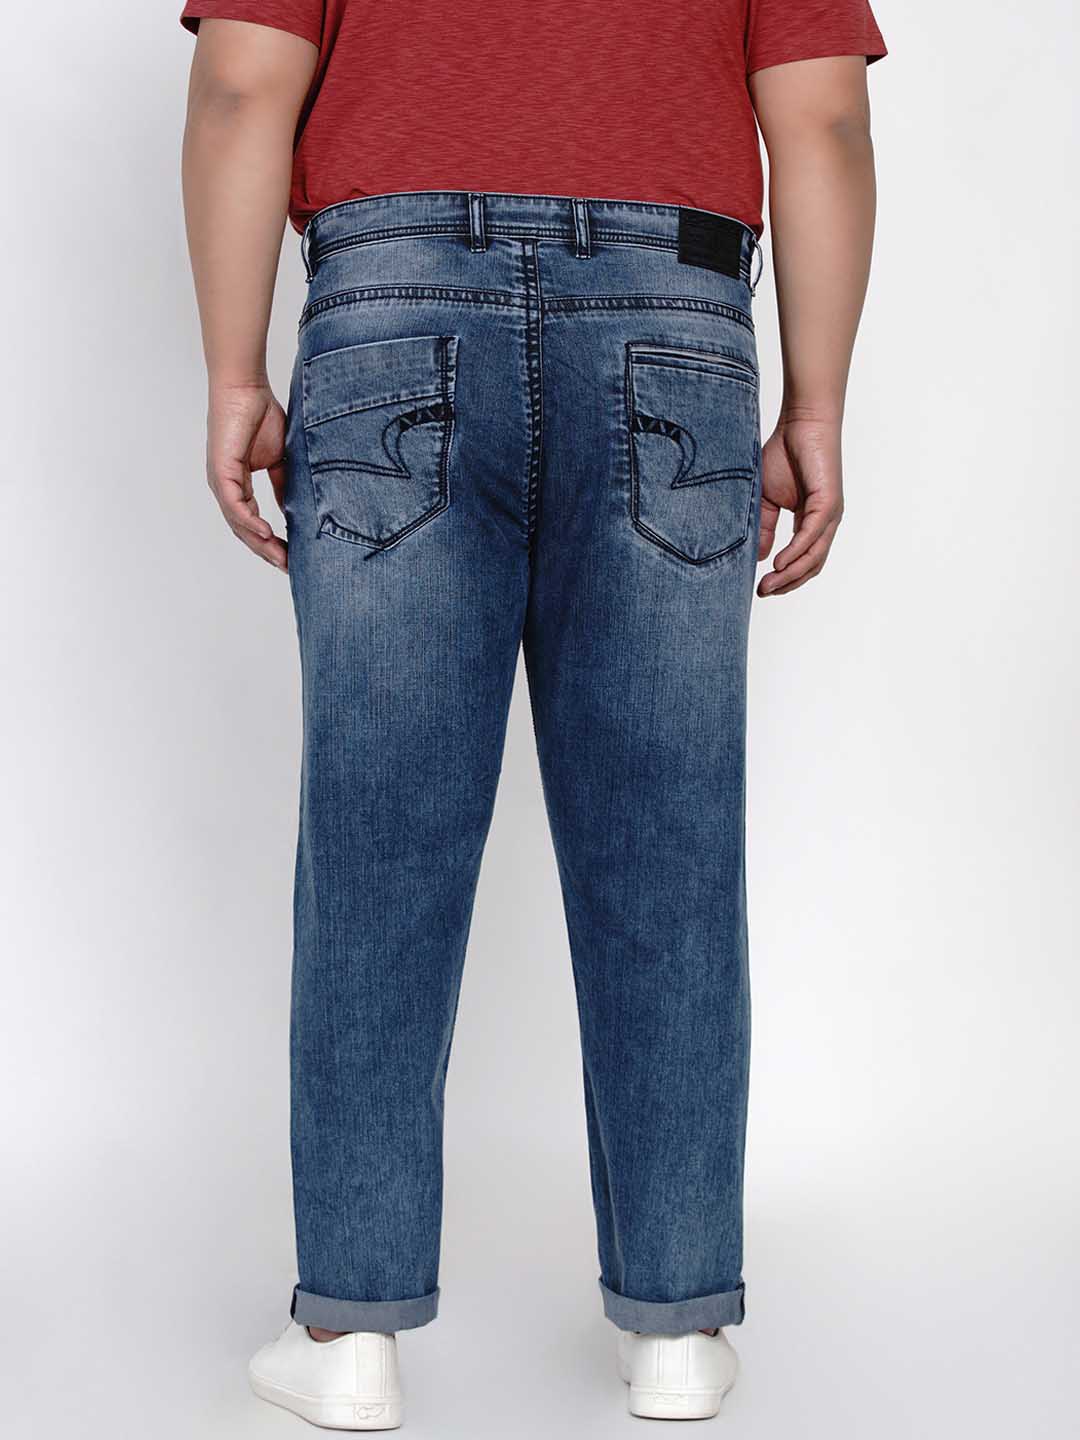 bottomwear/jeans/JPJ12115/jpj12115-4.jpg